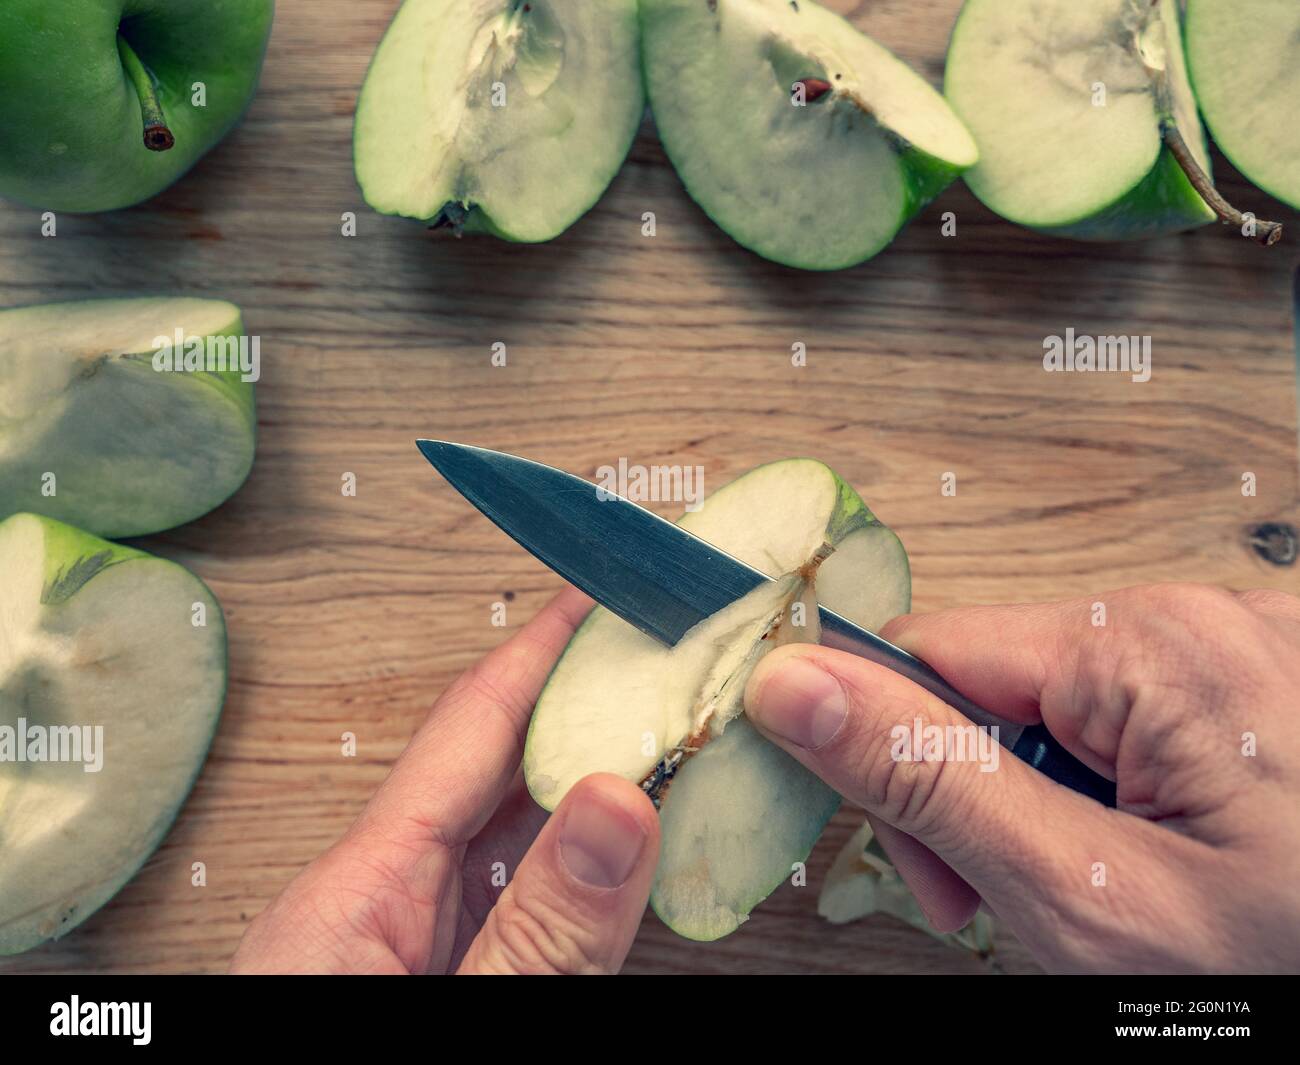 Main avec un couteau coupant un noyau de pomme sur une planche à découper en bois, frais juteux vert quartiers de pomme éparpillés sur l'arrière-plan. Banque D'Images